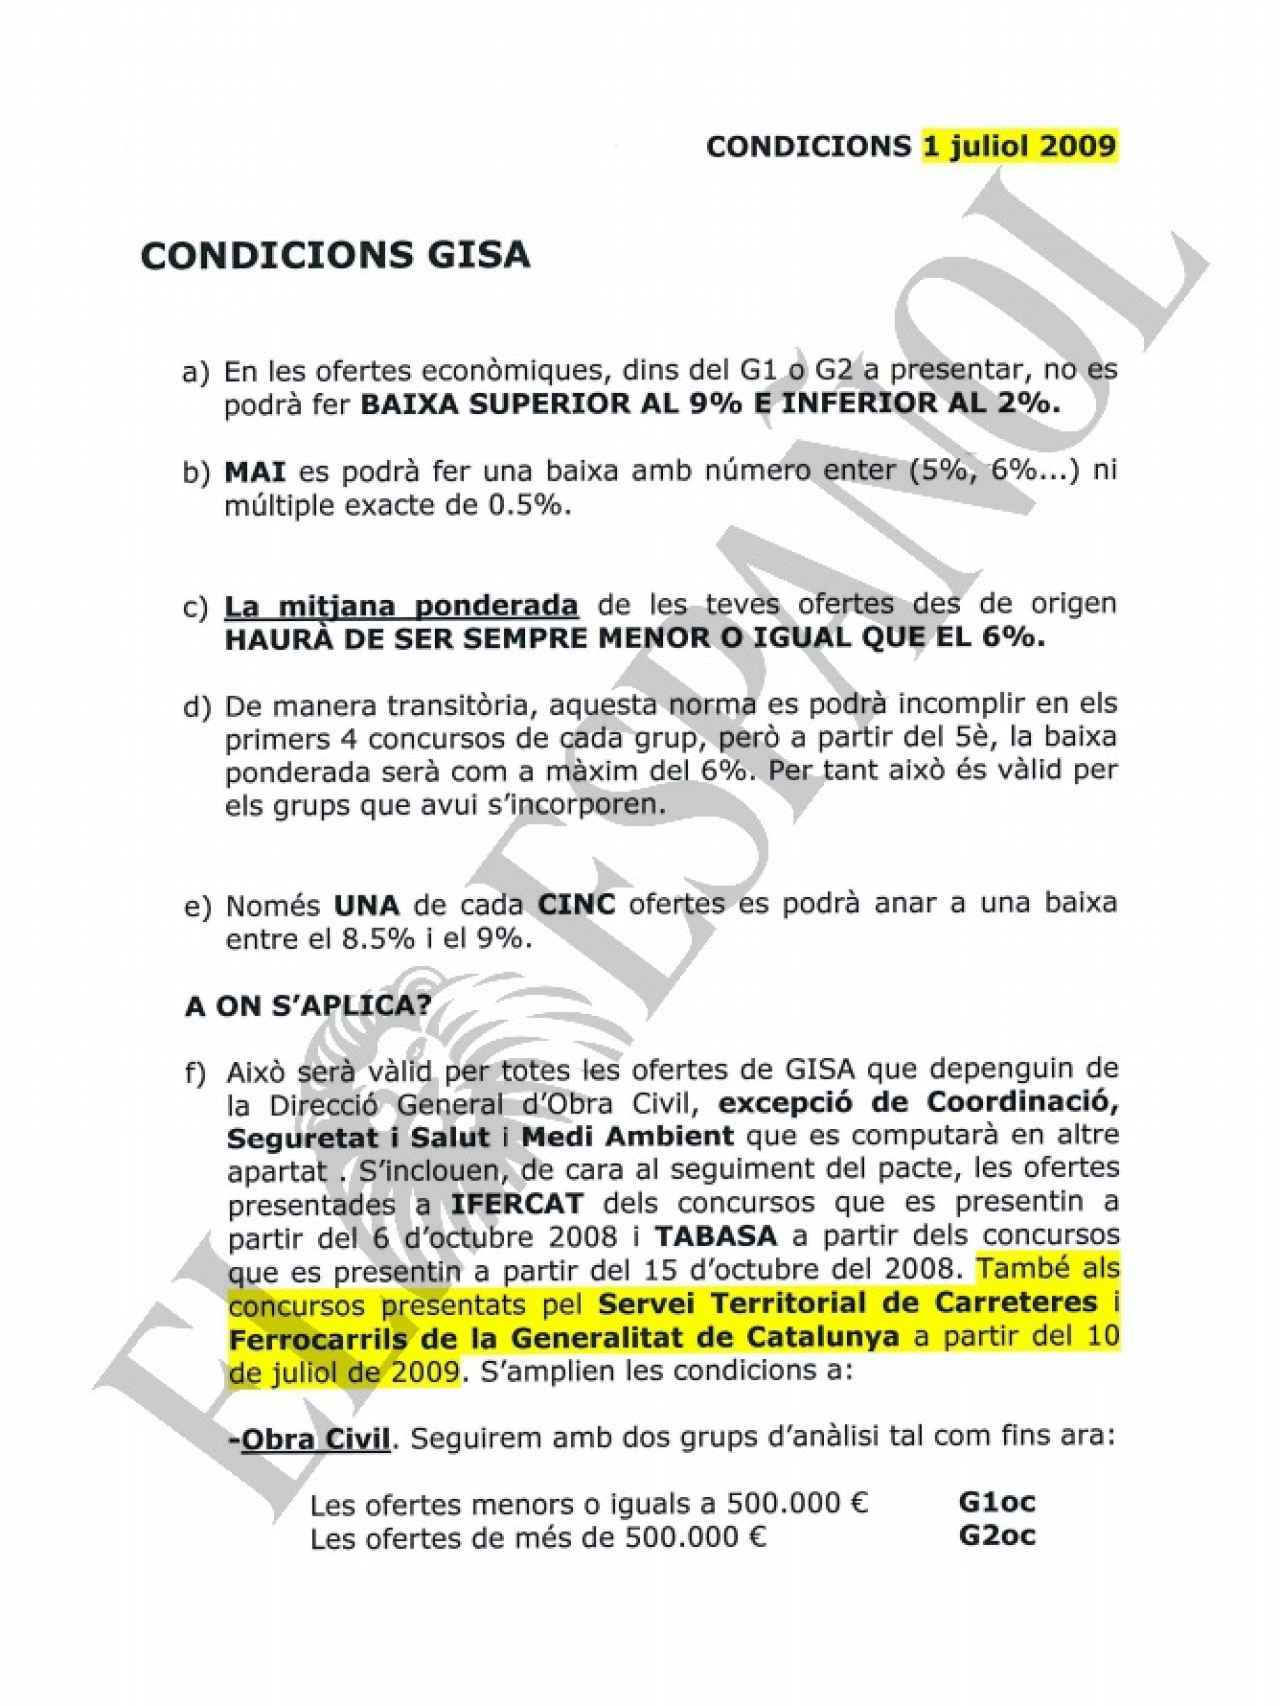 DOCUMENTO Nº22. Hoja con las condiciones pactadas para licitar a los contratos ofertados por la empresa pública GISA, fechado en julio de 2009.